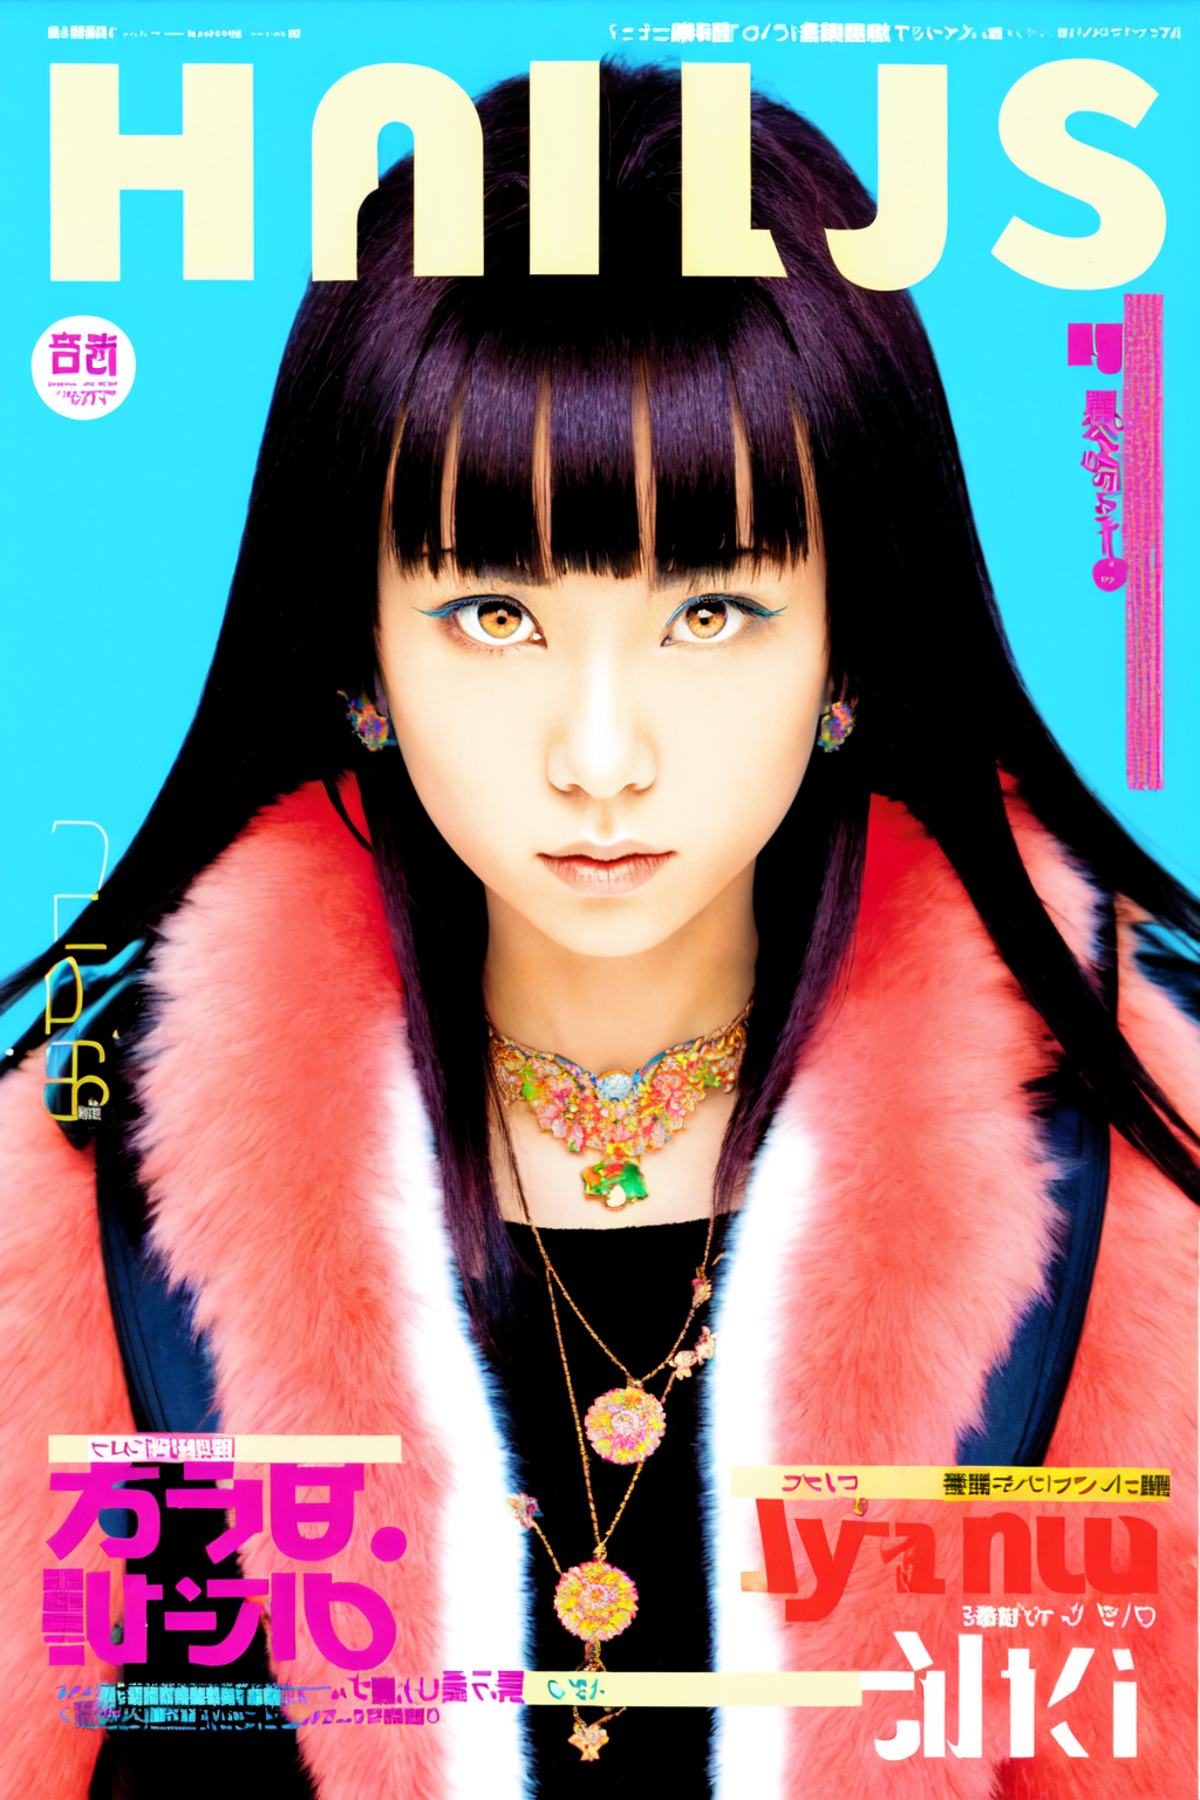 Nihon Music Magazine Style image by duskfallcrew